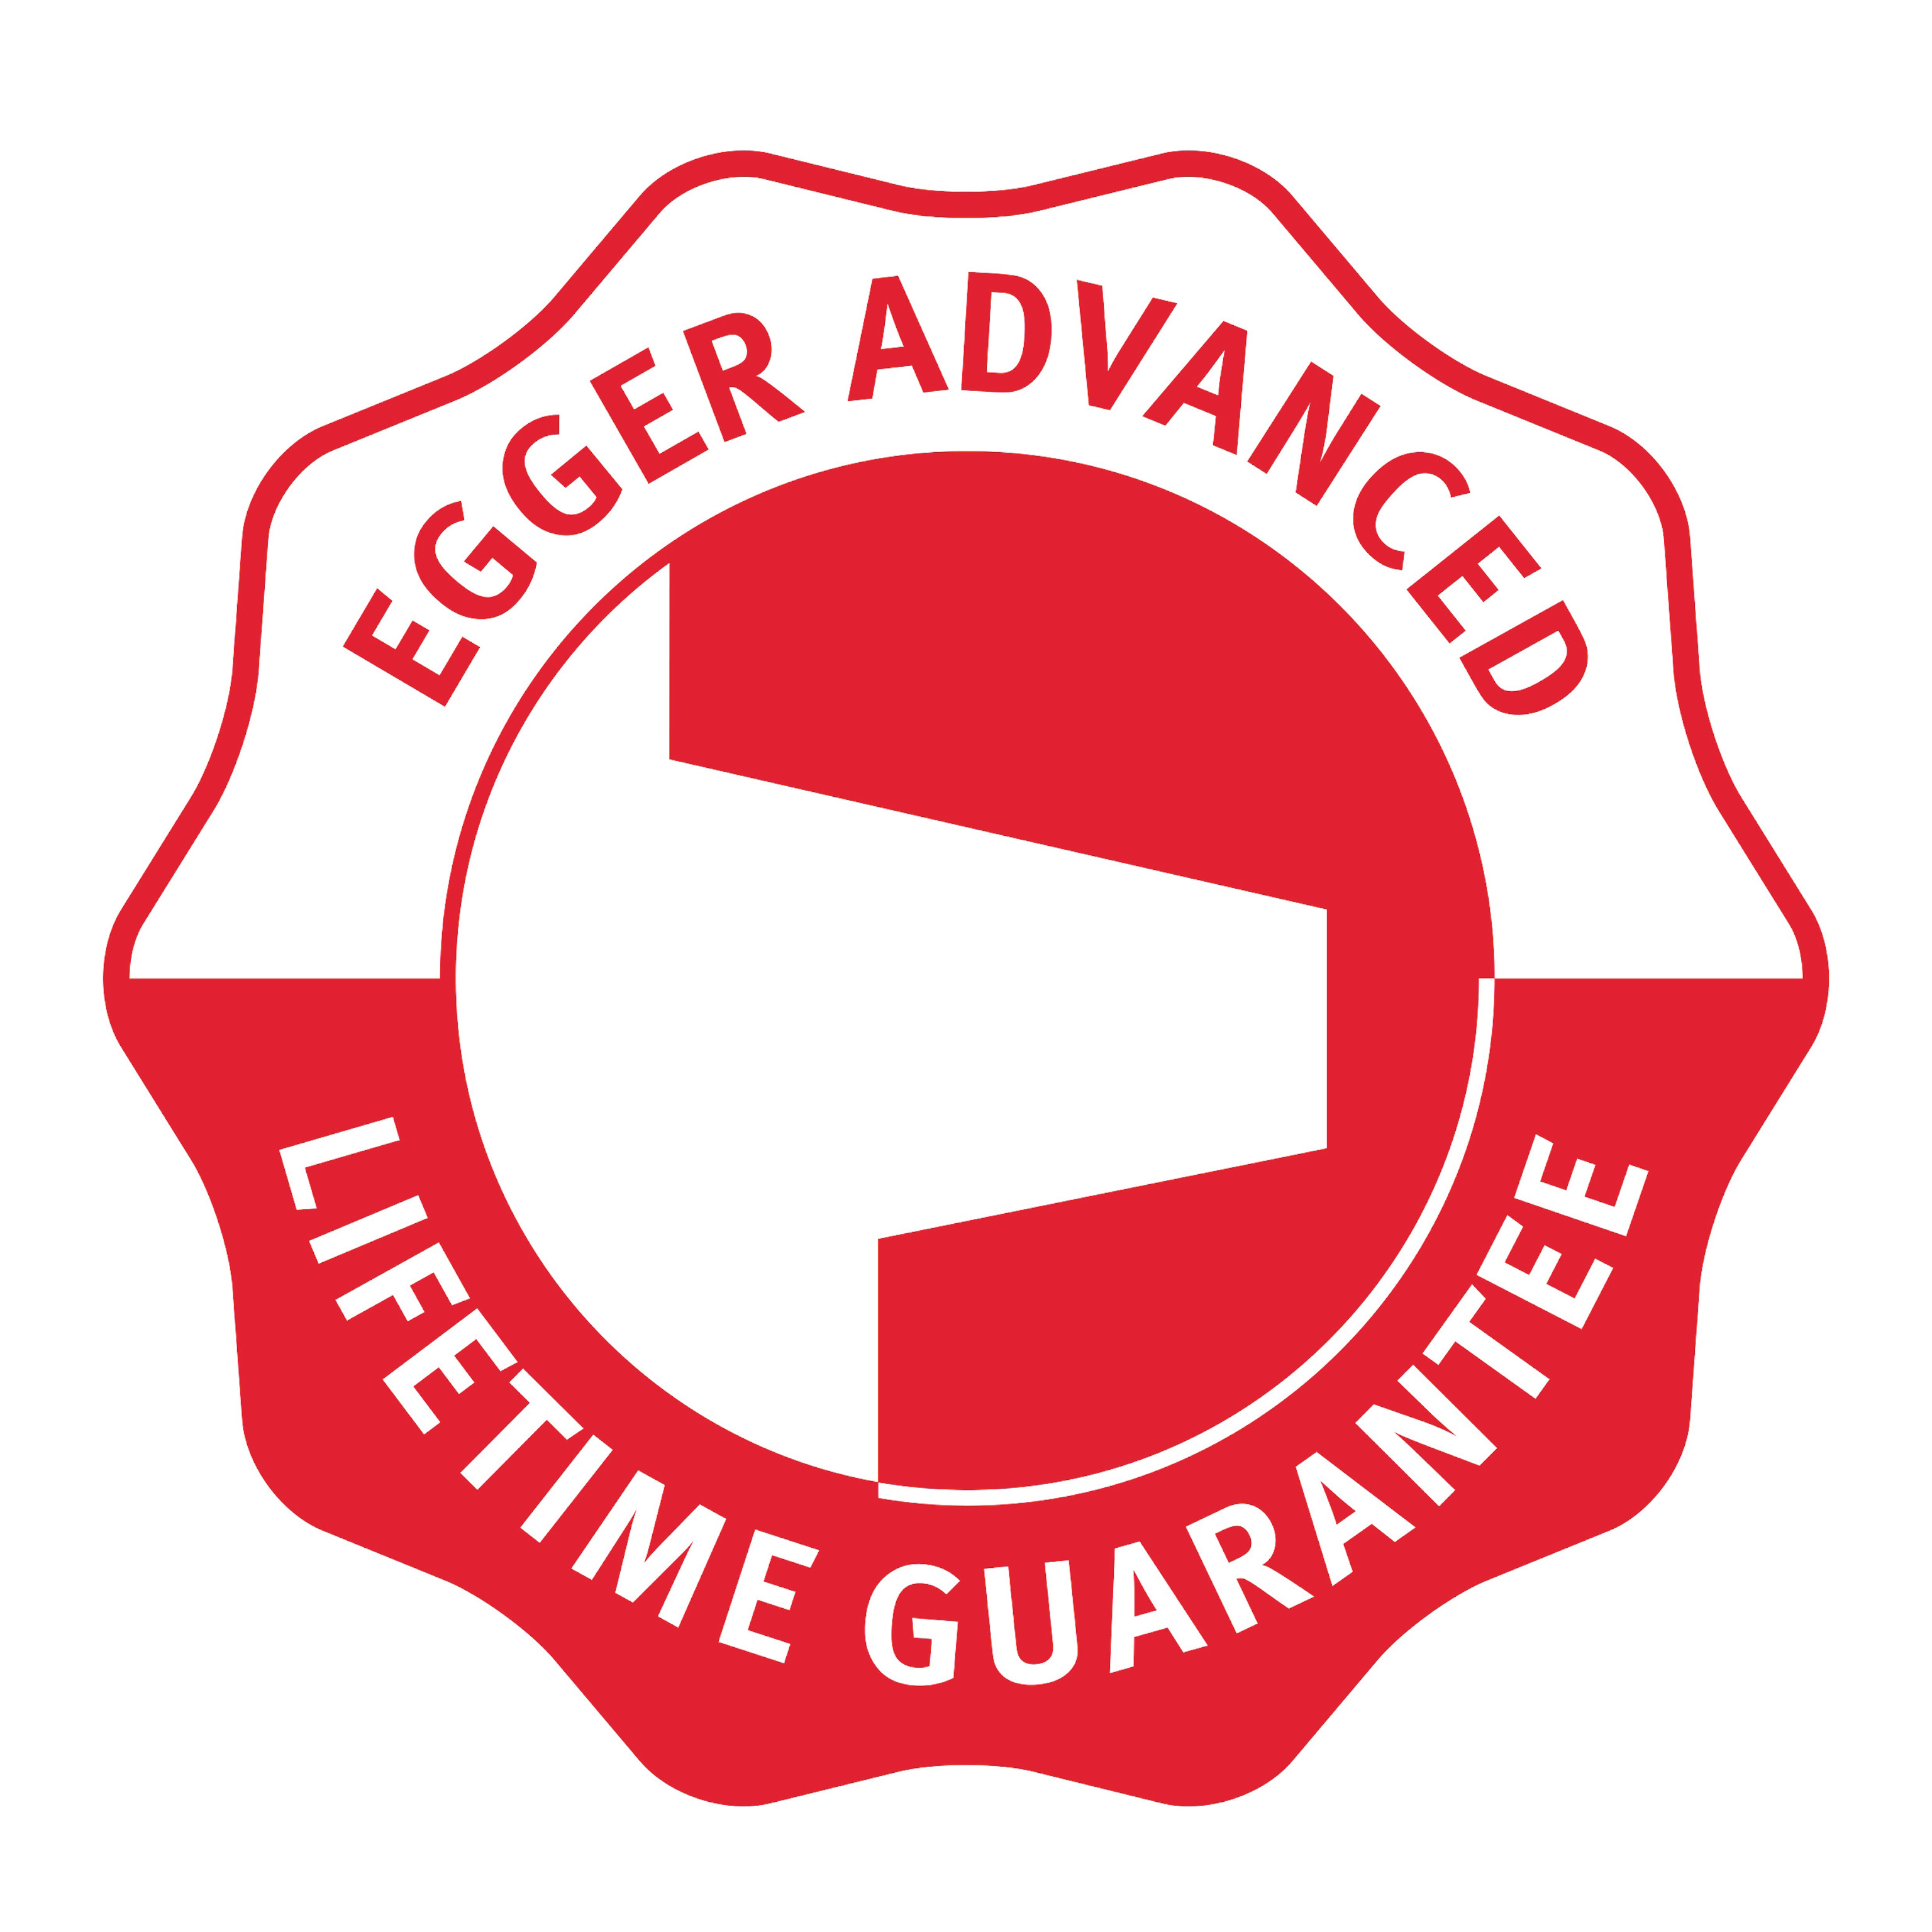 EGGER Advanced Lifetime Guarantee